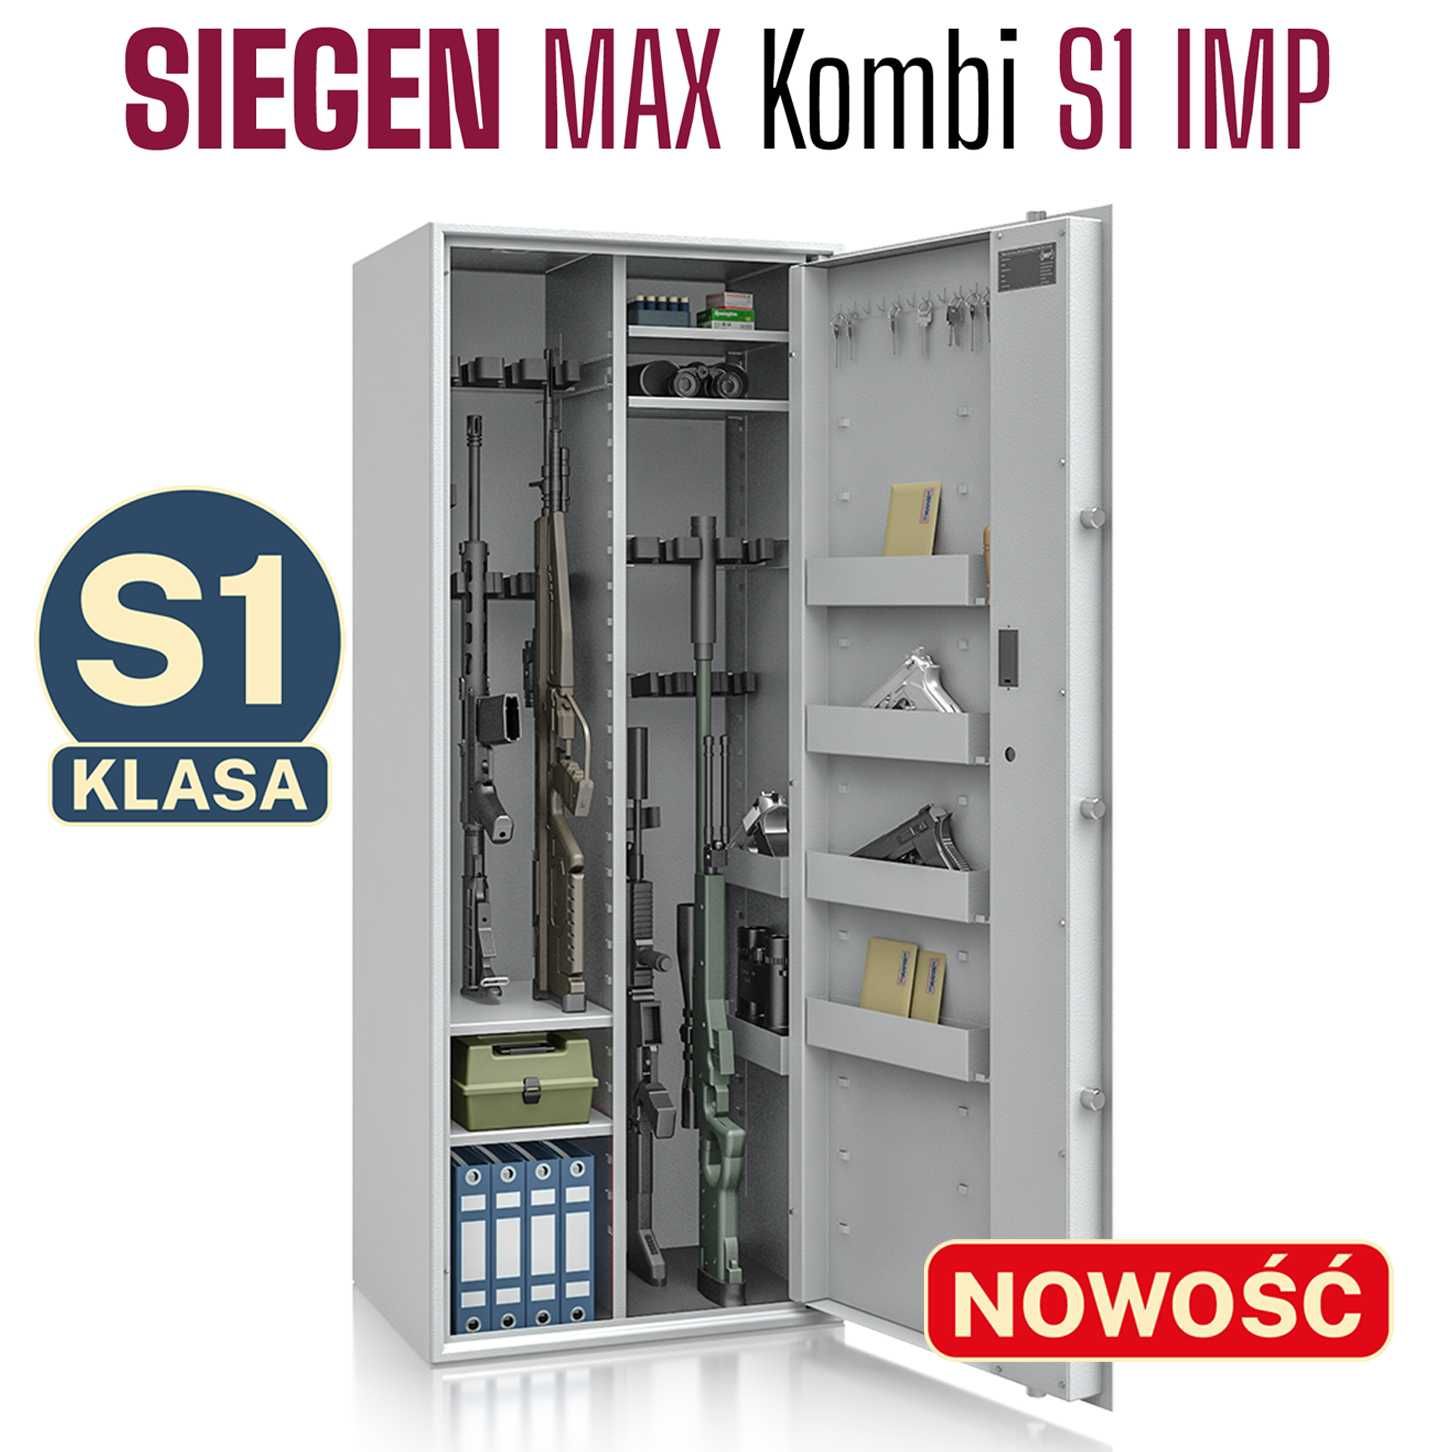 Szafa na broń SIEGEN MAX Kombi kl S1 18 szt. broni zamek elektroniczny